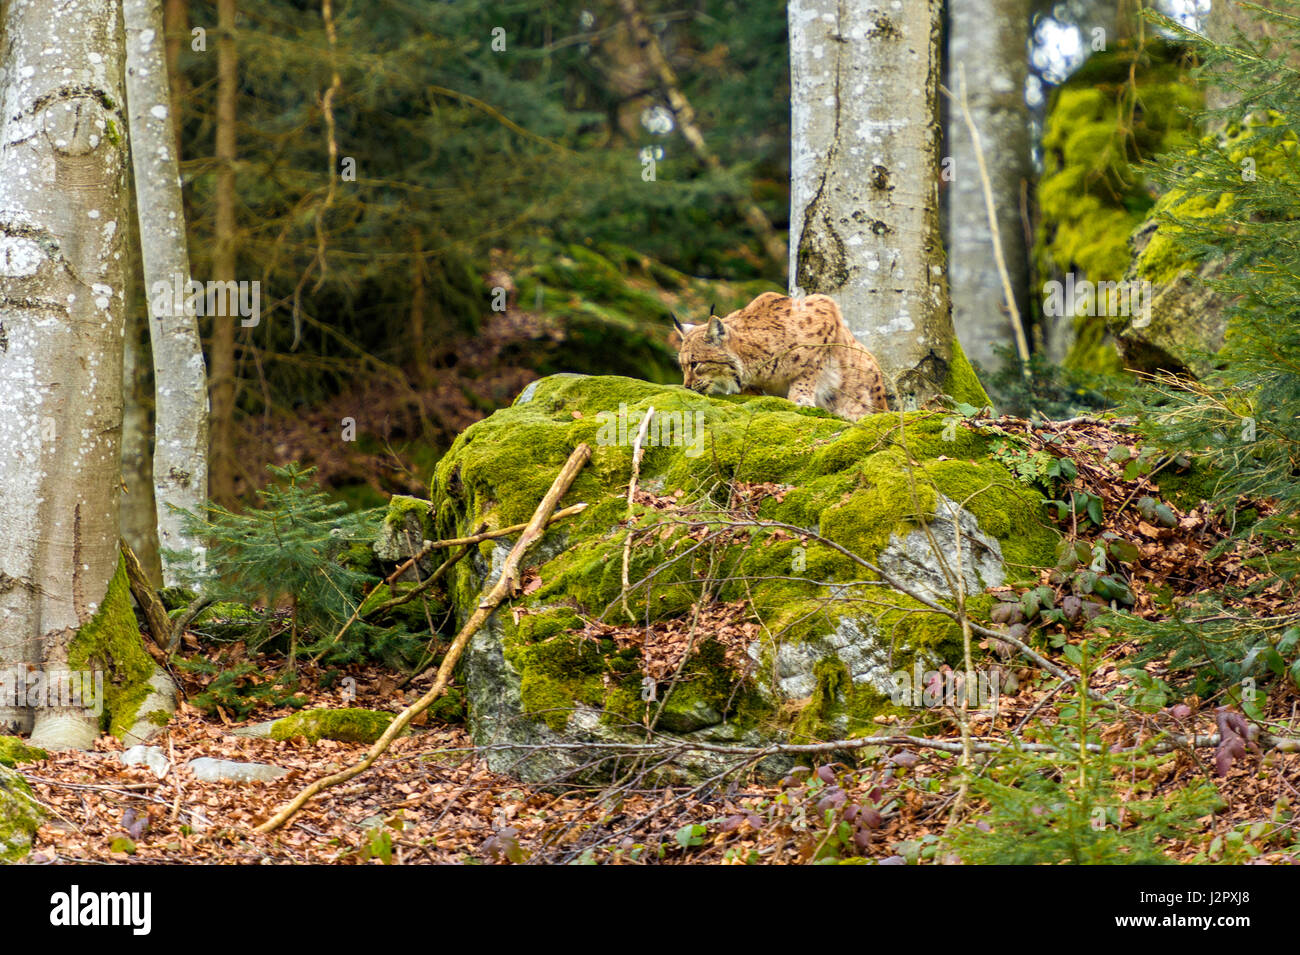 Hermoso el lince eurásico (Lynx lynx) representada en cuclillas sobre un afloramiento rocoso, en un bosque remoto invierno. Ajuste. Foto de stock